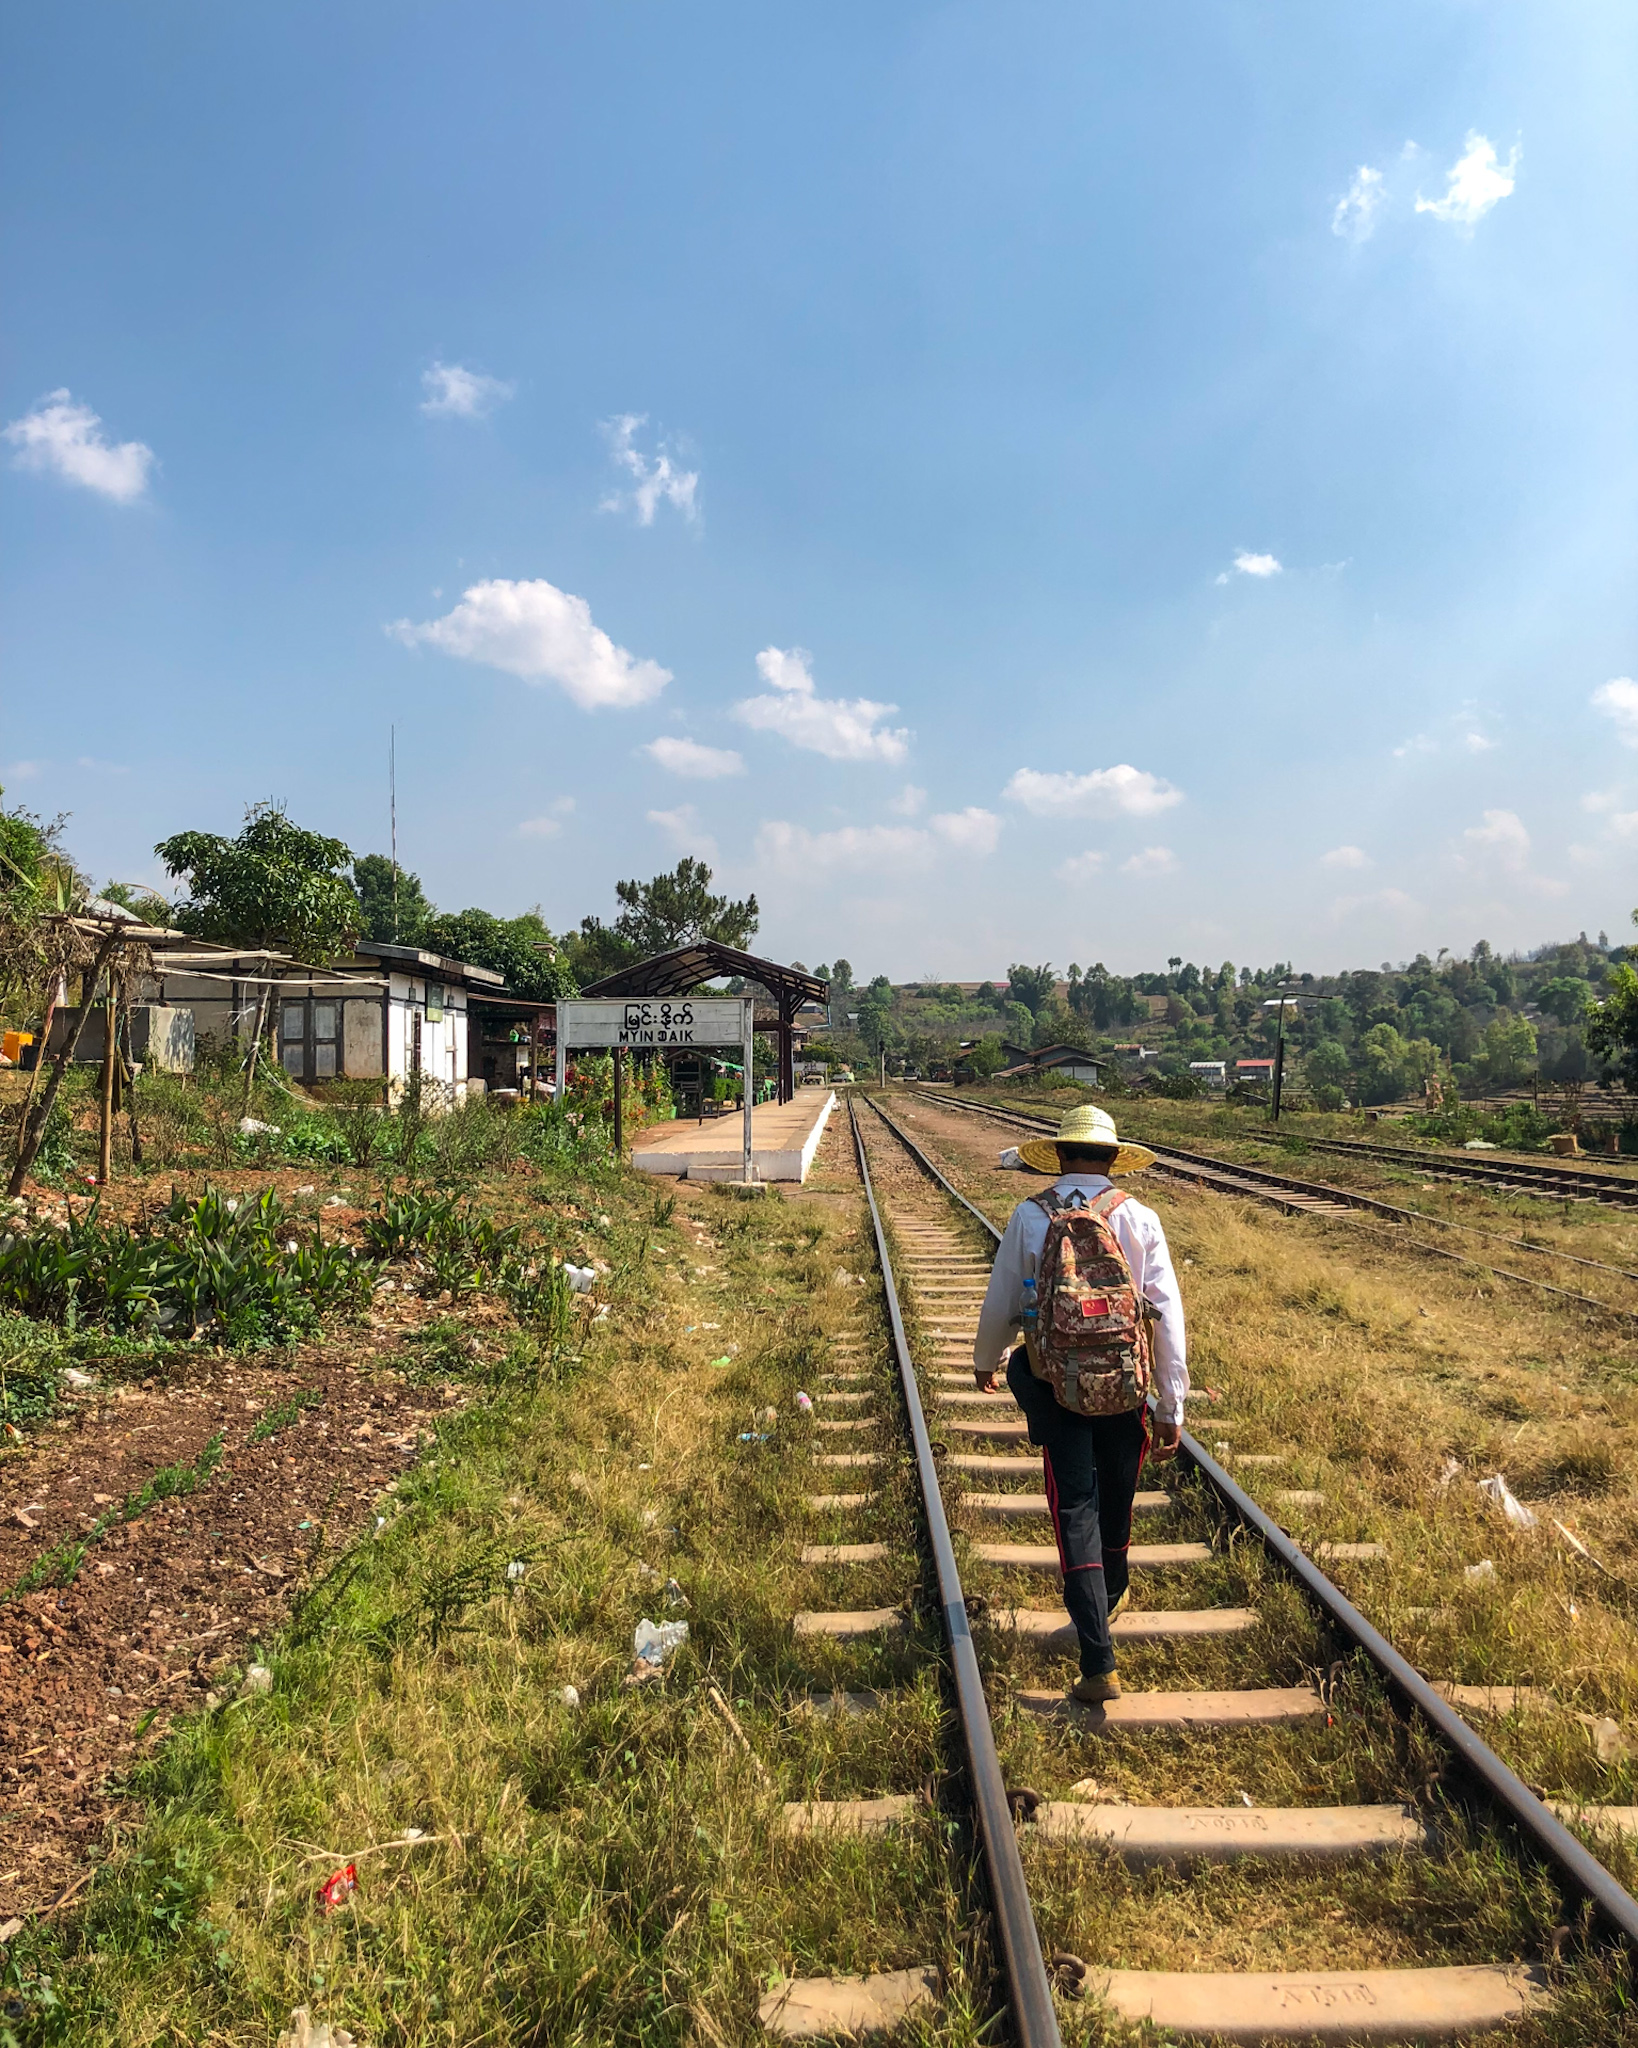 Maung Myoe sur les rails de la voie ferrée